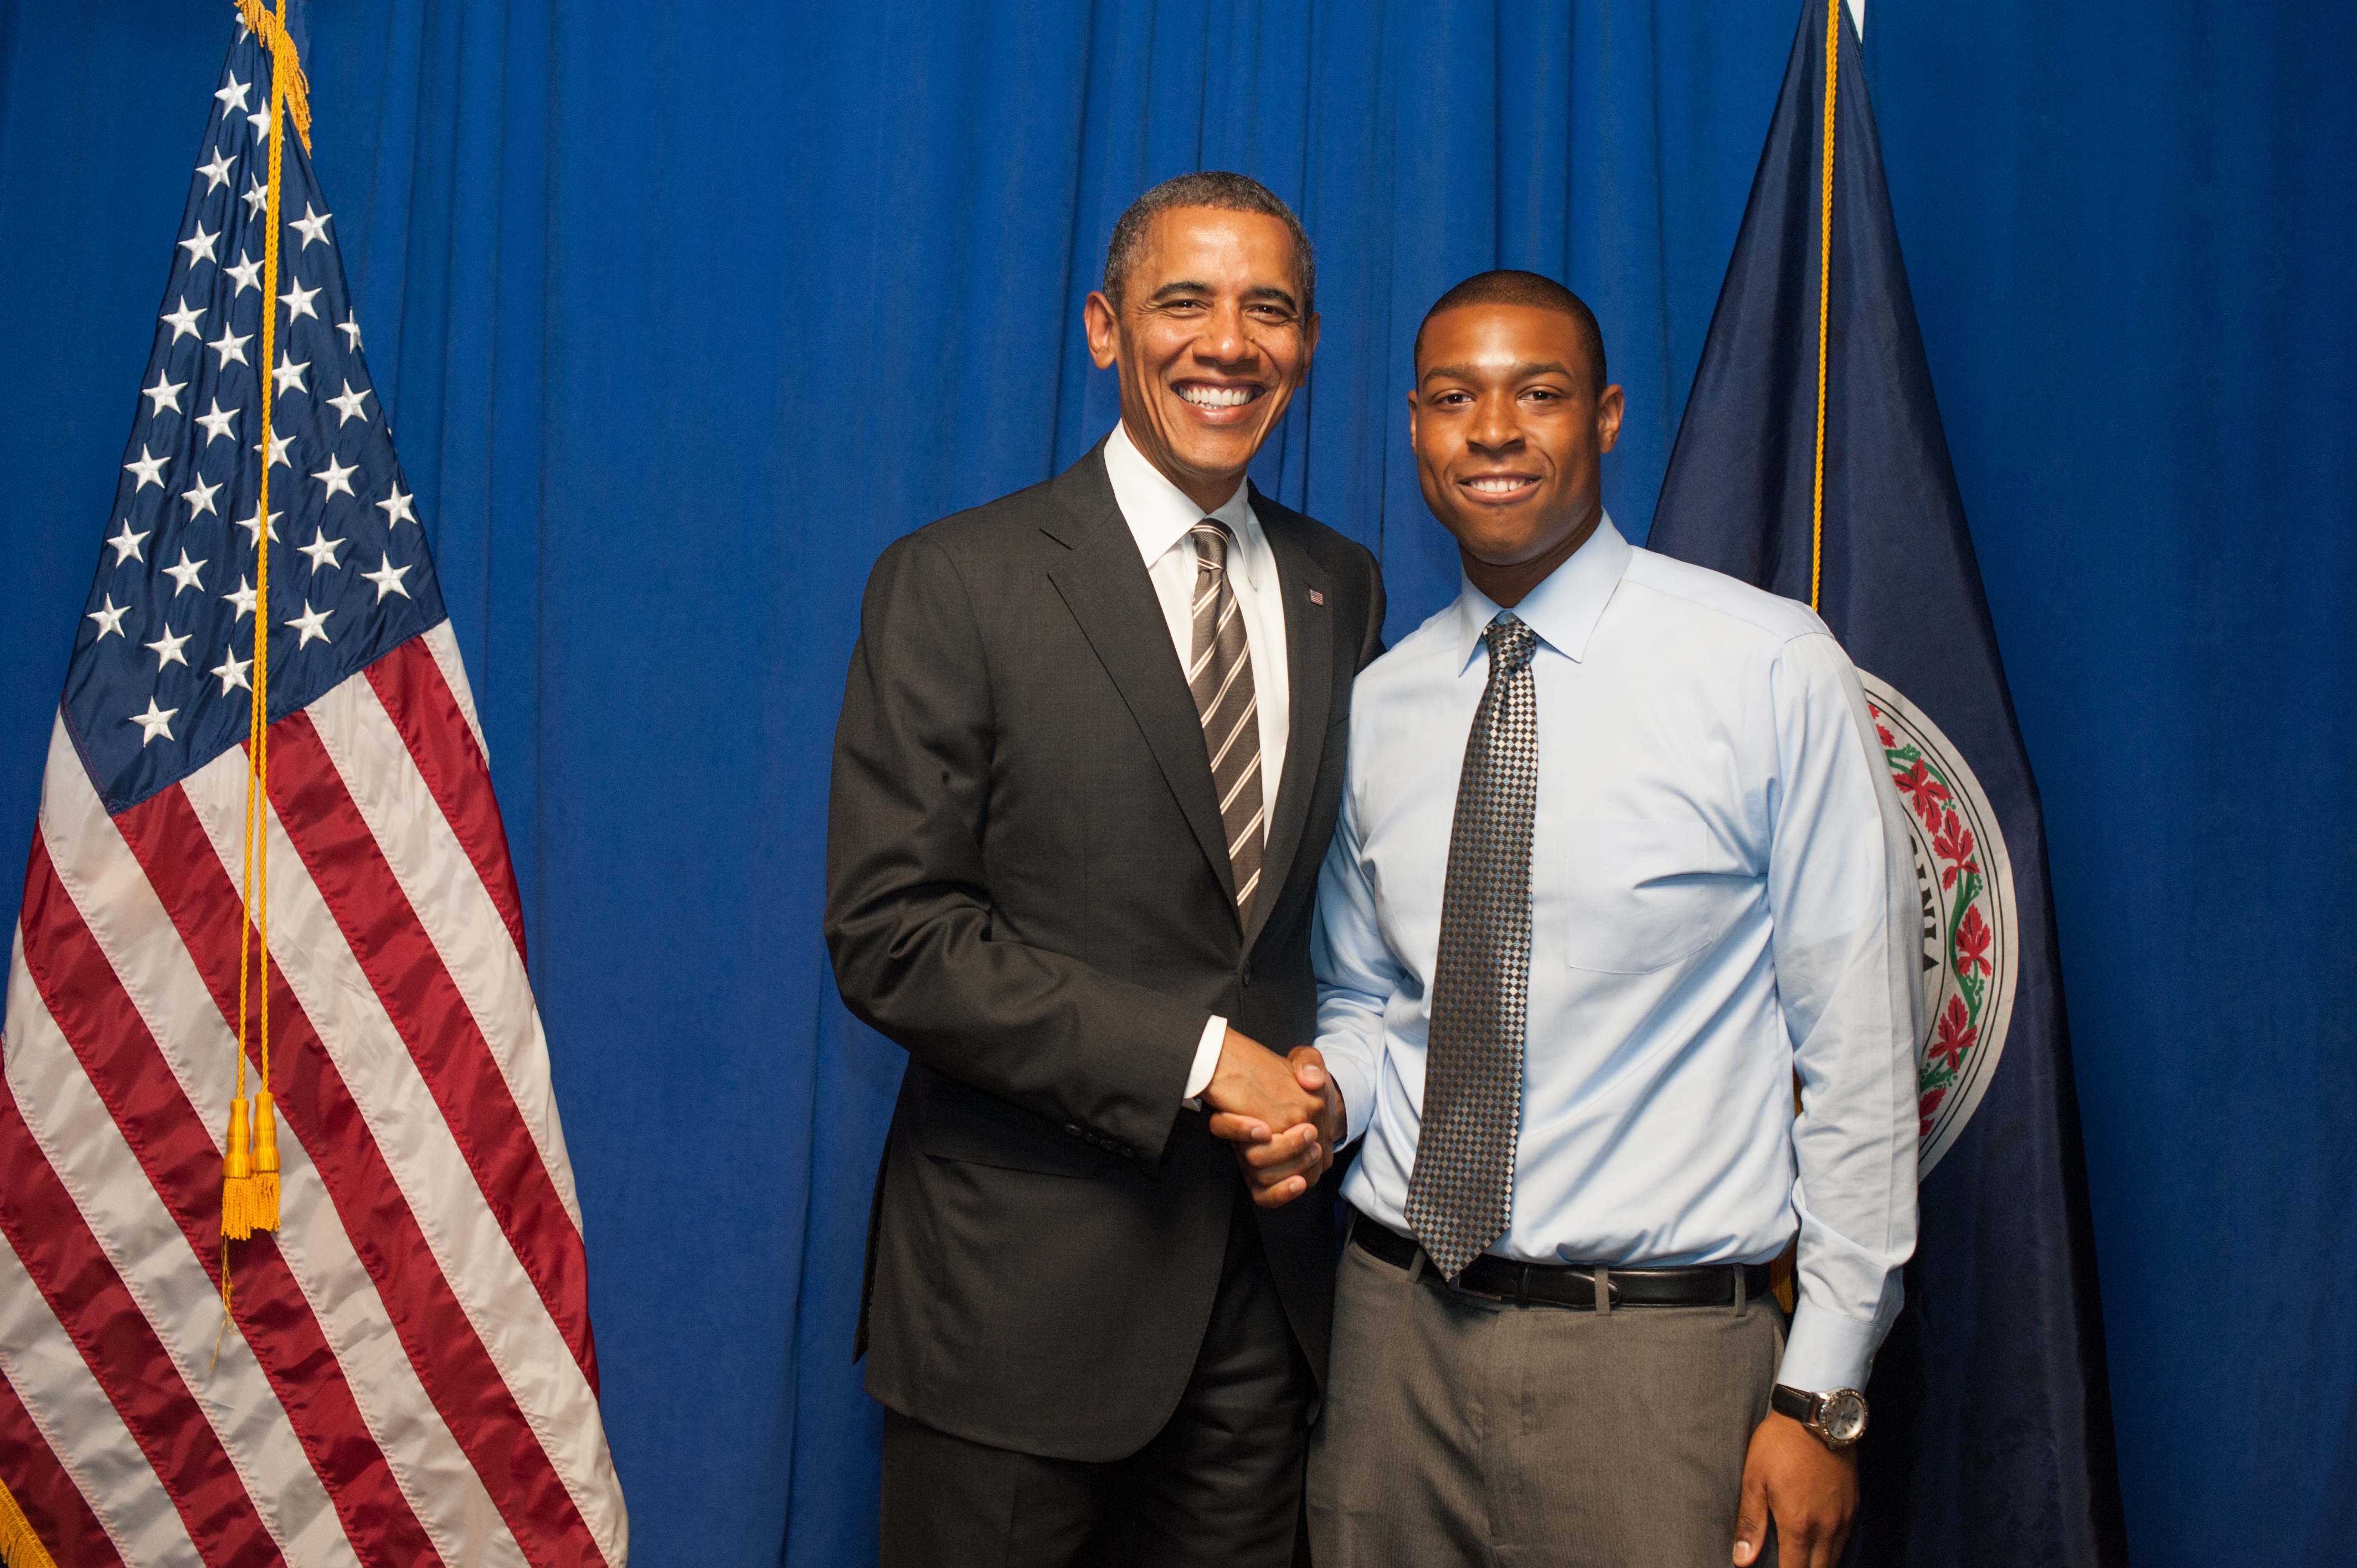 President Obama and U.Va. graduate Edward Smith smile while shaking hands